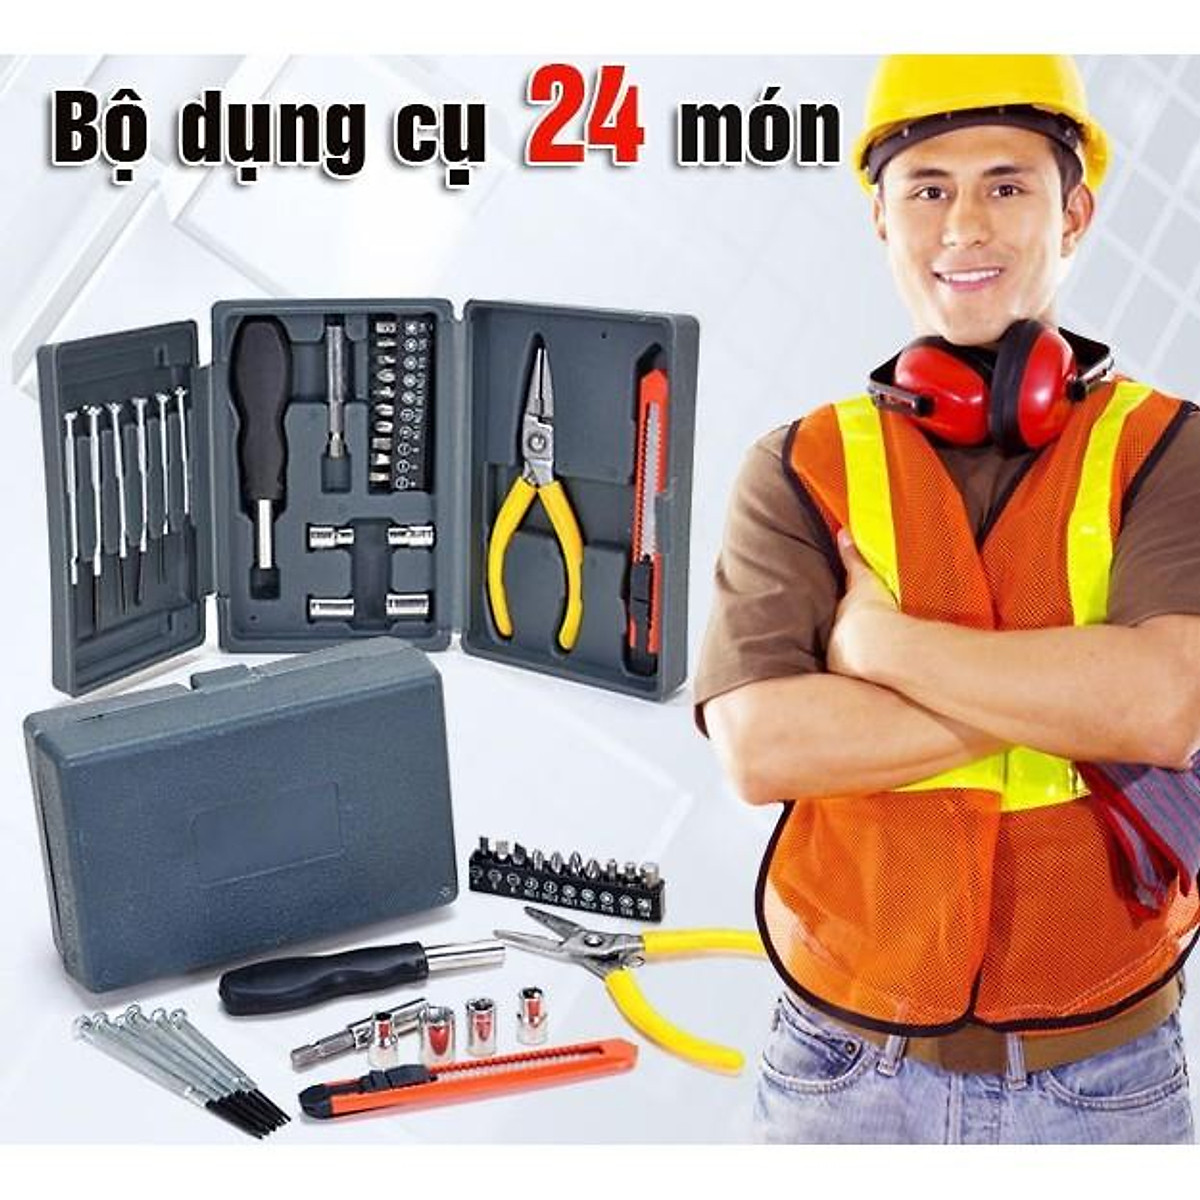 ️ Bộ dụng cụ đồ nghề sửa chữa đa năng 24 món 206075